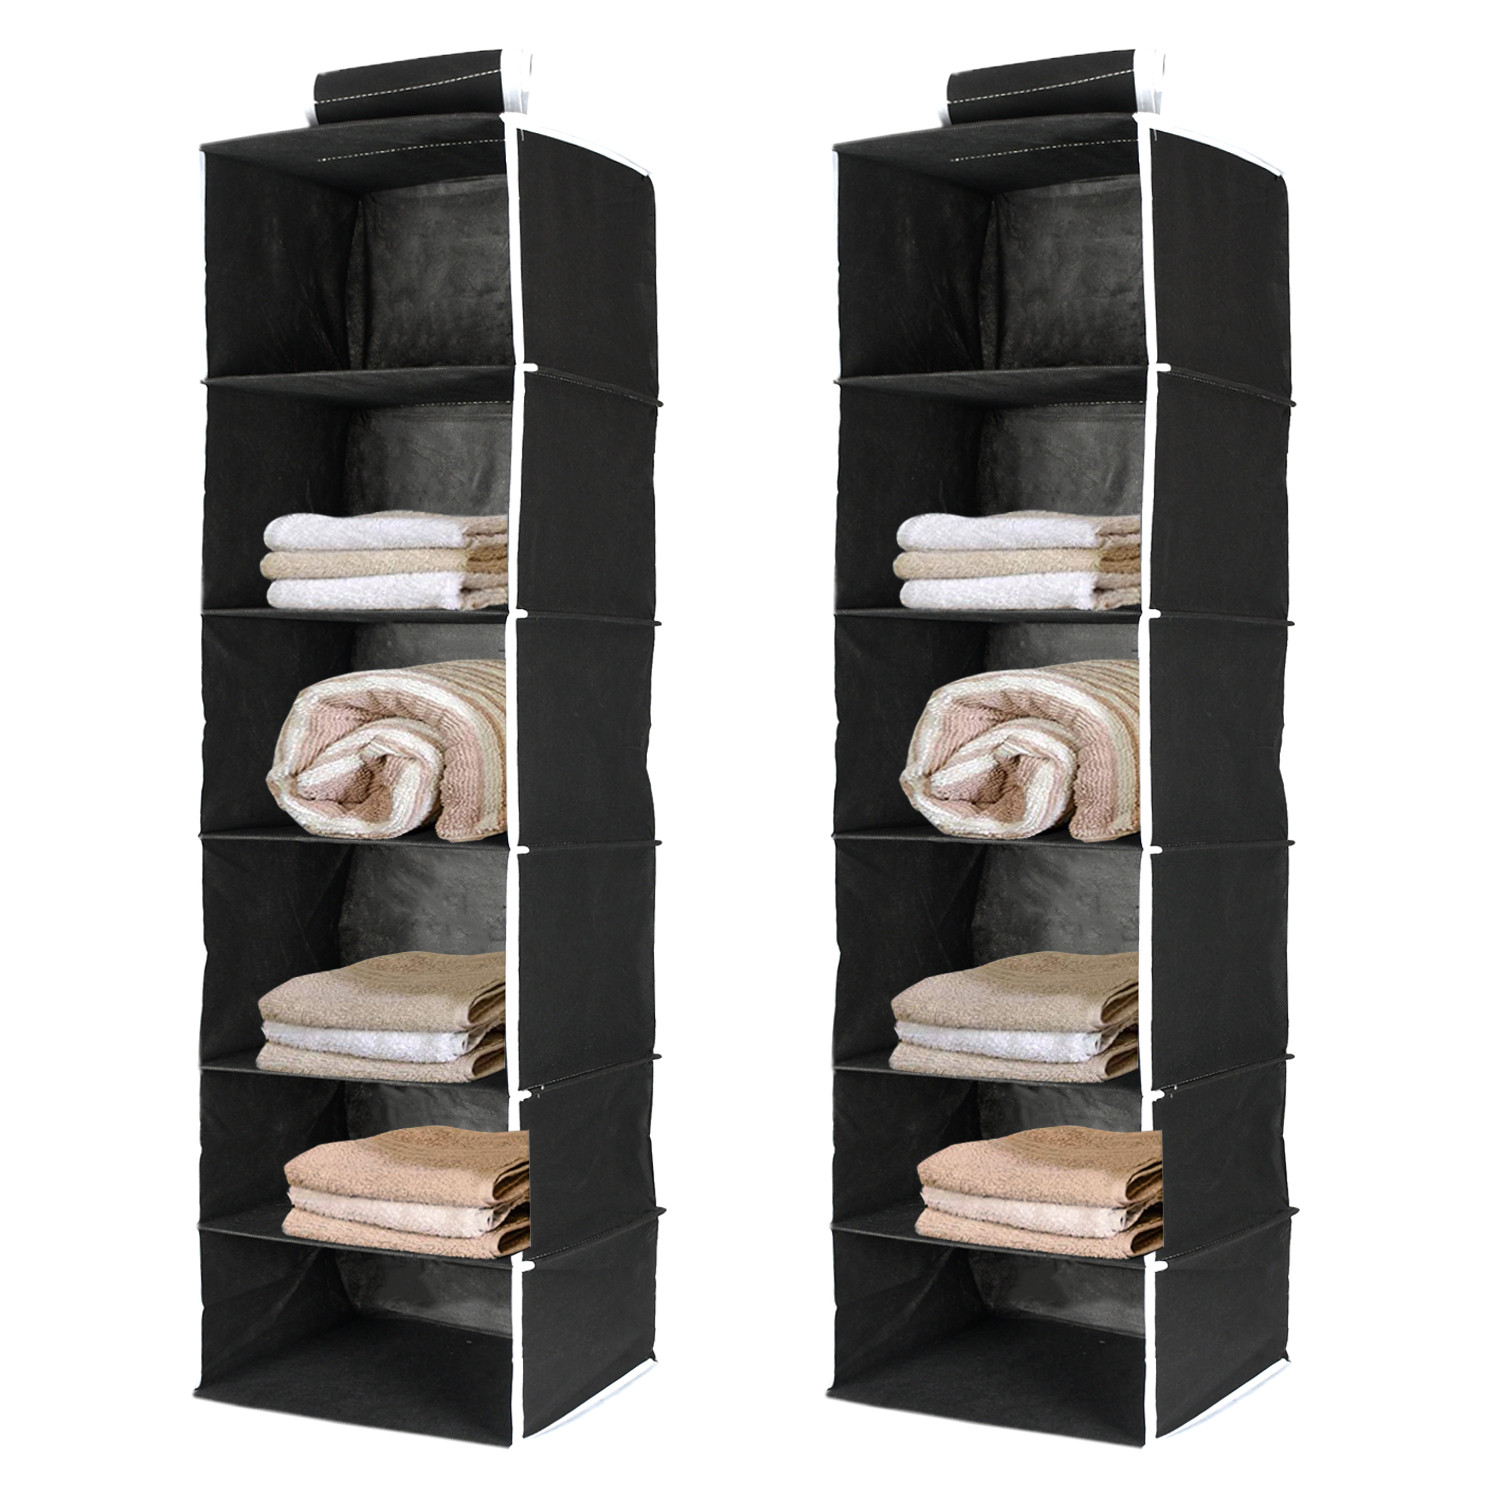 Kuber Industries 6 Shelf Closet Hanging Organizer/ Wardrobe Organizer For Clothes Storage (Black)